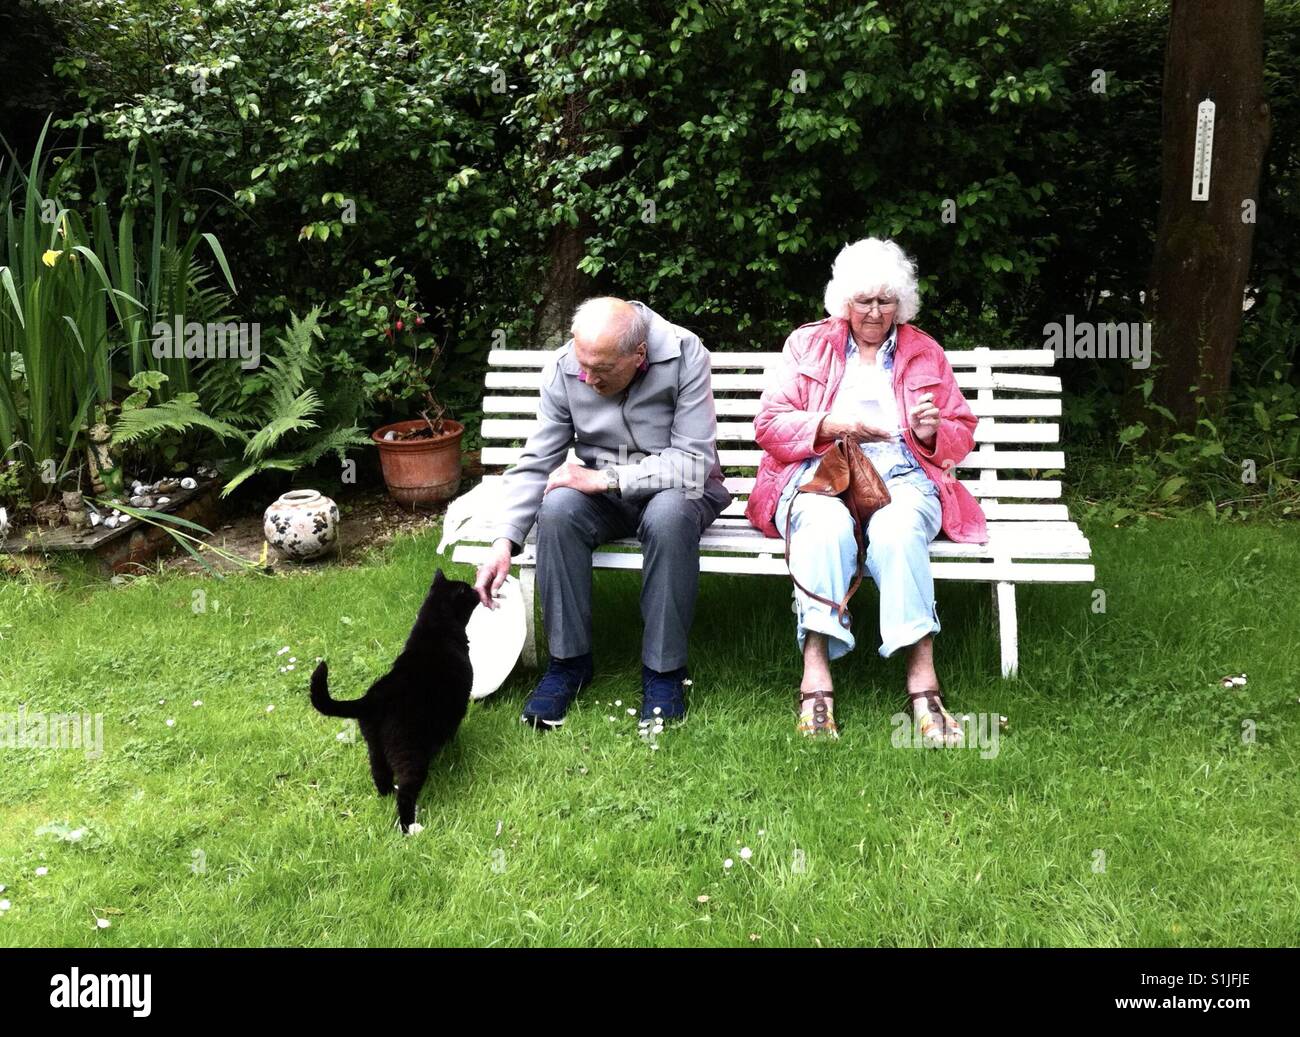 Una coppia di anziani seduti su una panchina da giardino sono avvicinati da un simpatico gatto nero. Foto Stock